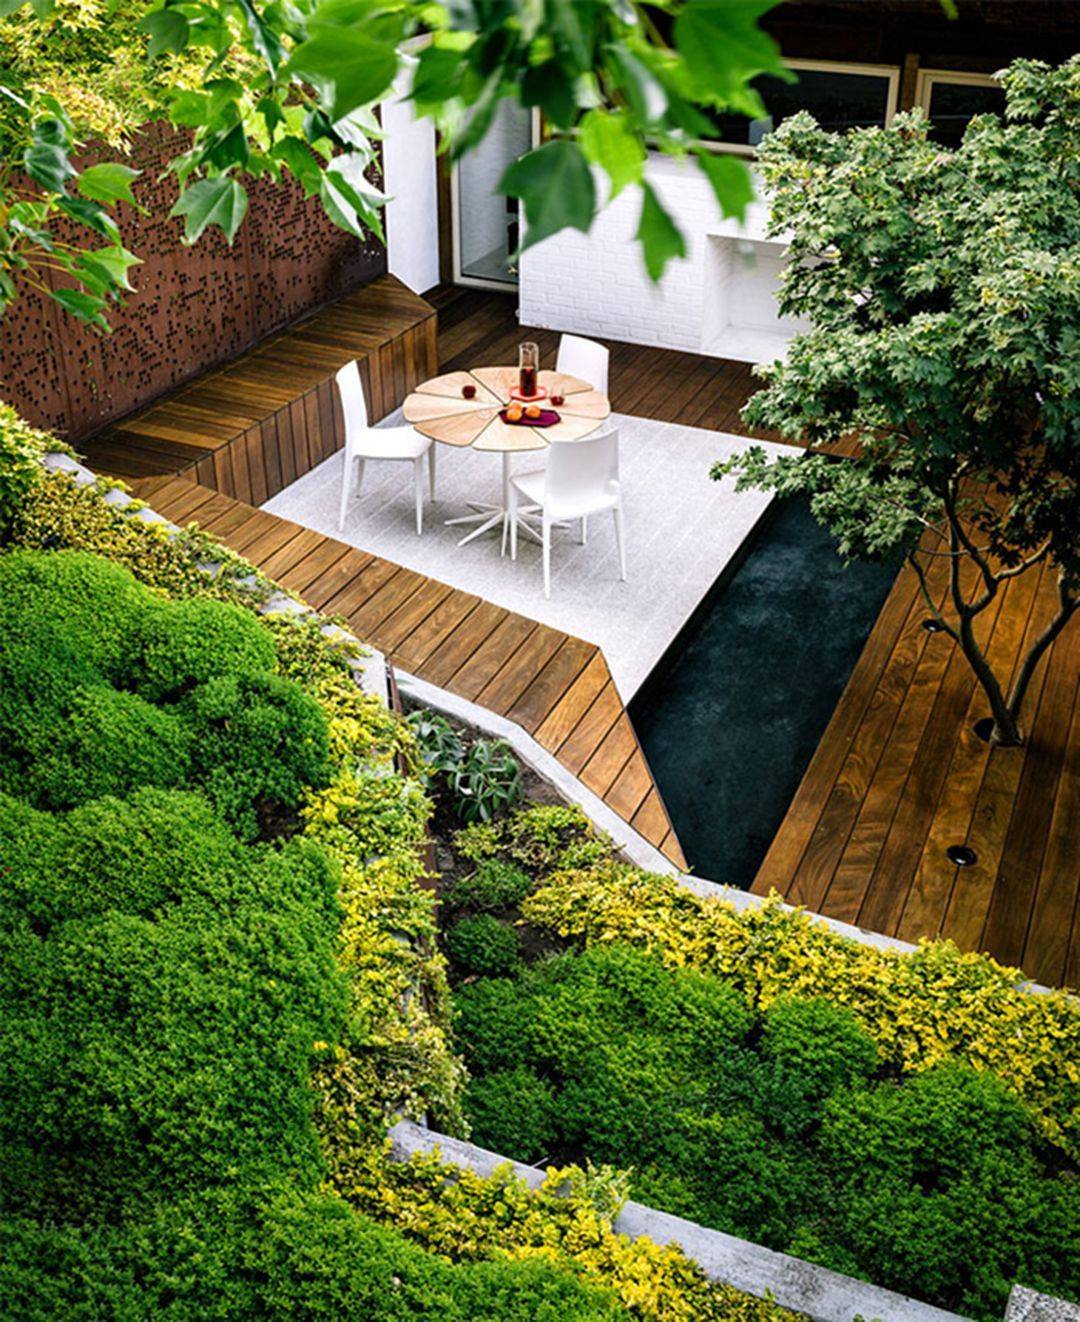 Beautiful Zen Garden Ideas